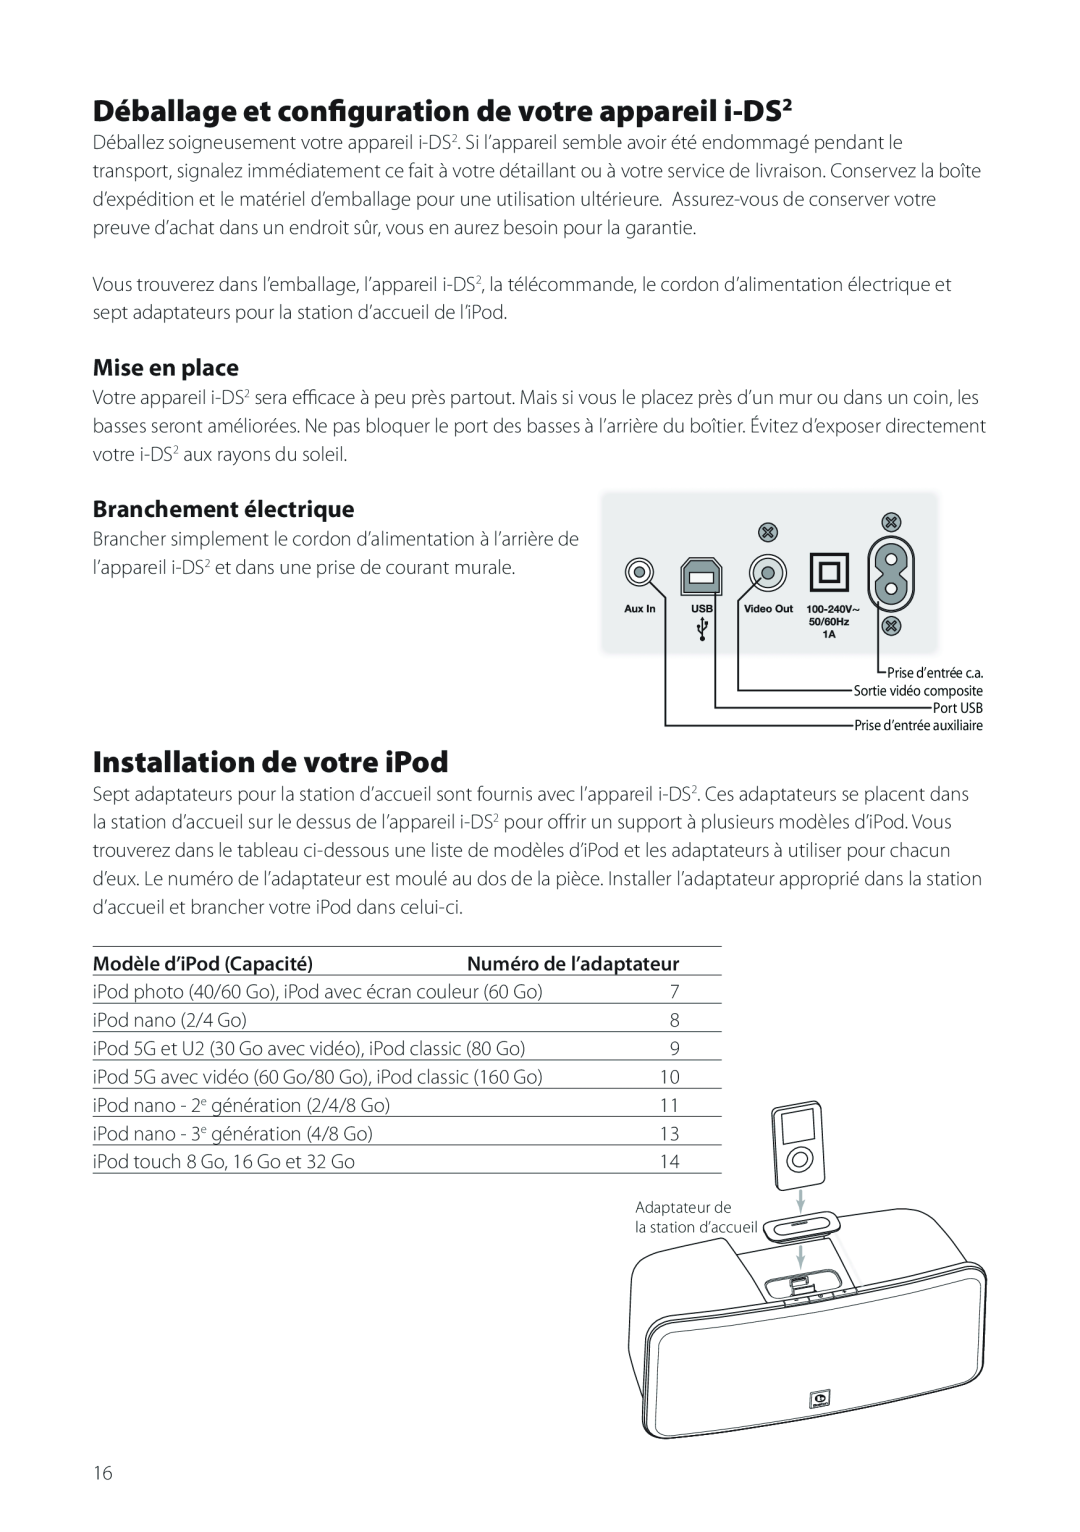 Boston Acoustics Horizon i-DS2 Installation de votre iPod, Mise en place, Branchement électrique, Modèle d’iPod Capacité 